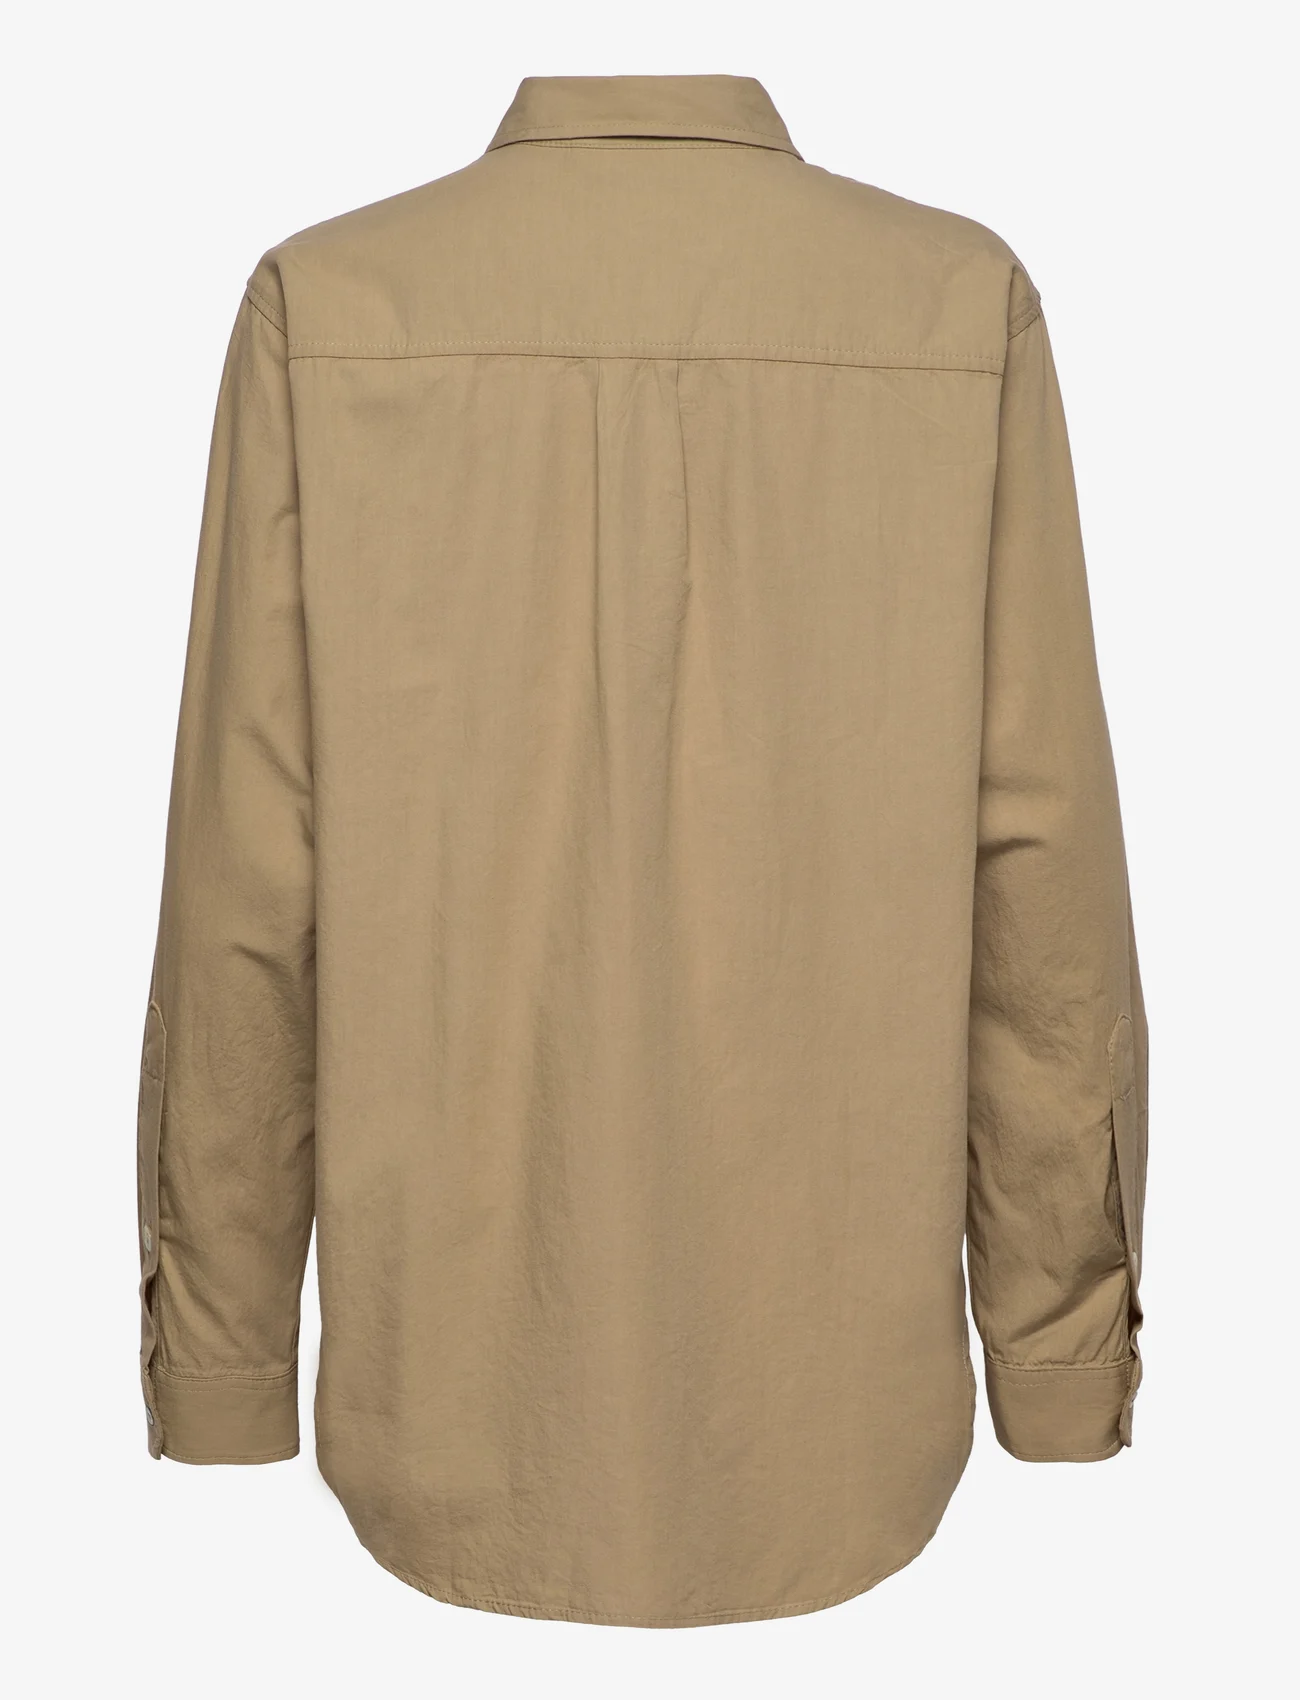 H2O Fagerholt - Afternoon Shirt - langermede skjorter - aluminium - 1